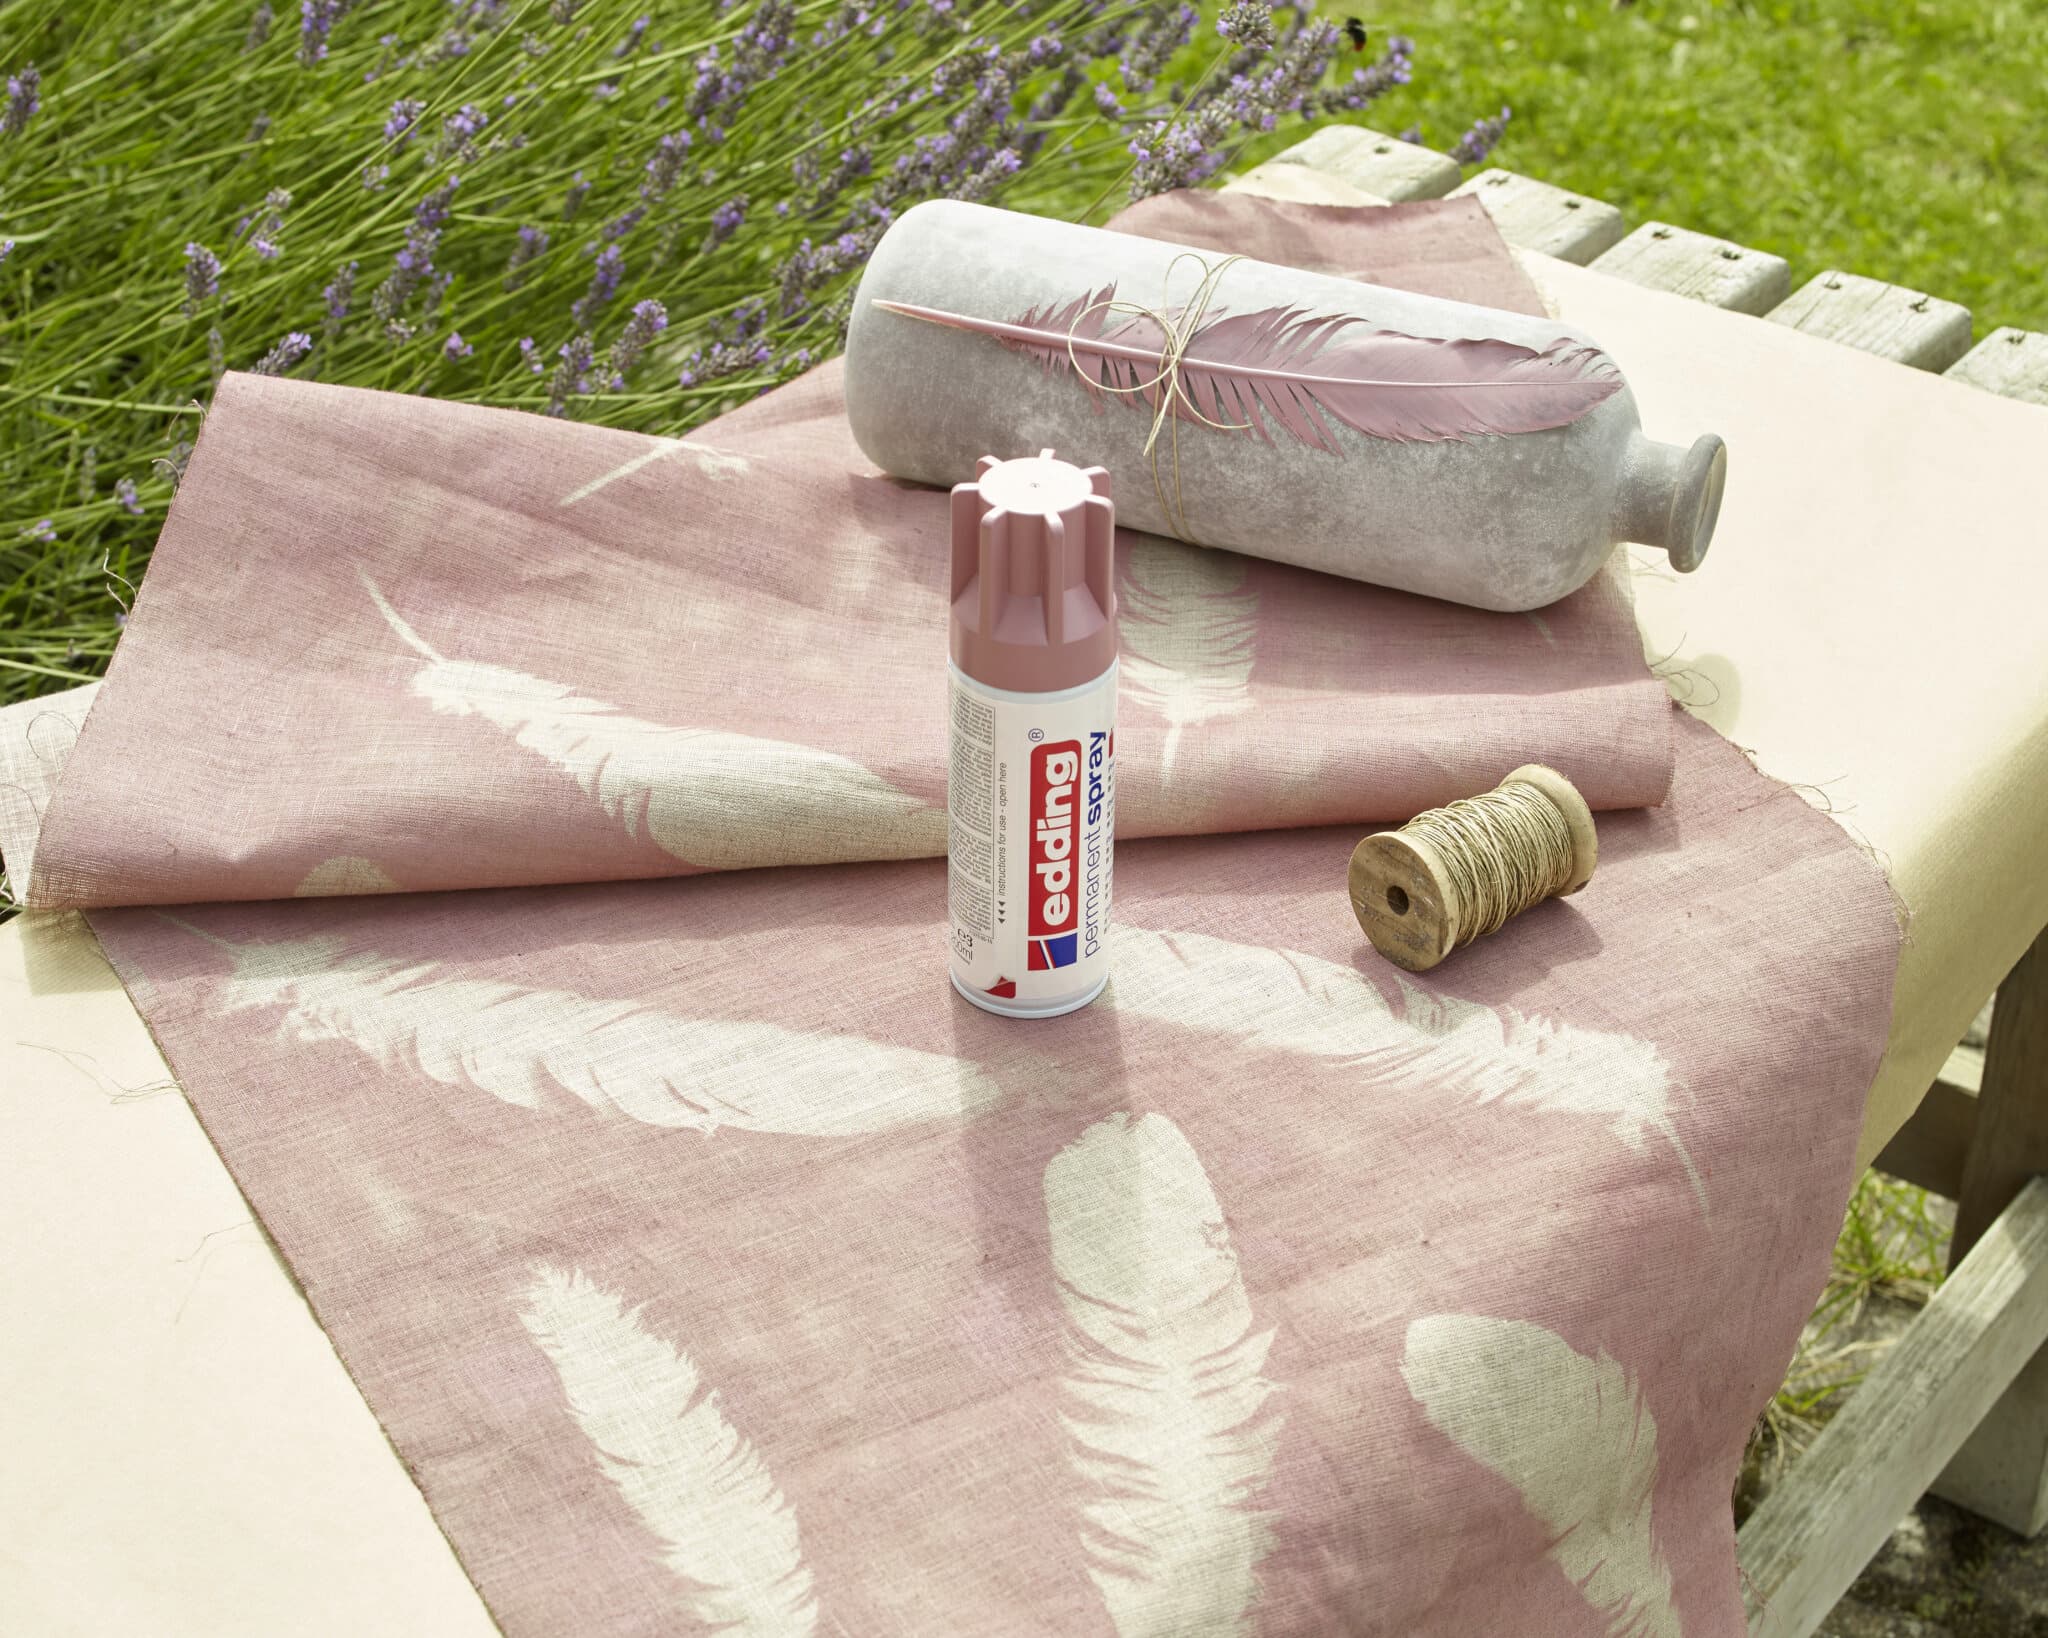 Eine ruhige Bastelumgebung im Freien mit einer Rolle rosa Stoff mit weißem Federmuster neben einer Dose edding 5200 Permanentspray Acryllack Pastell & sanfte Farben, einer Spule Bindfaden und einem dekorativen Kissen.